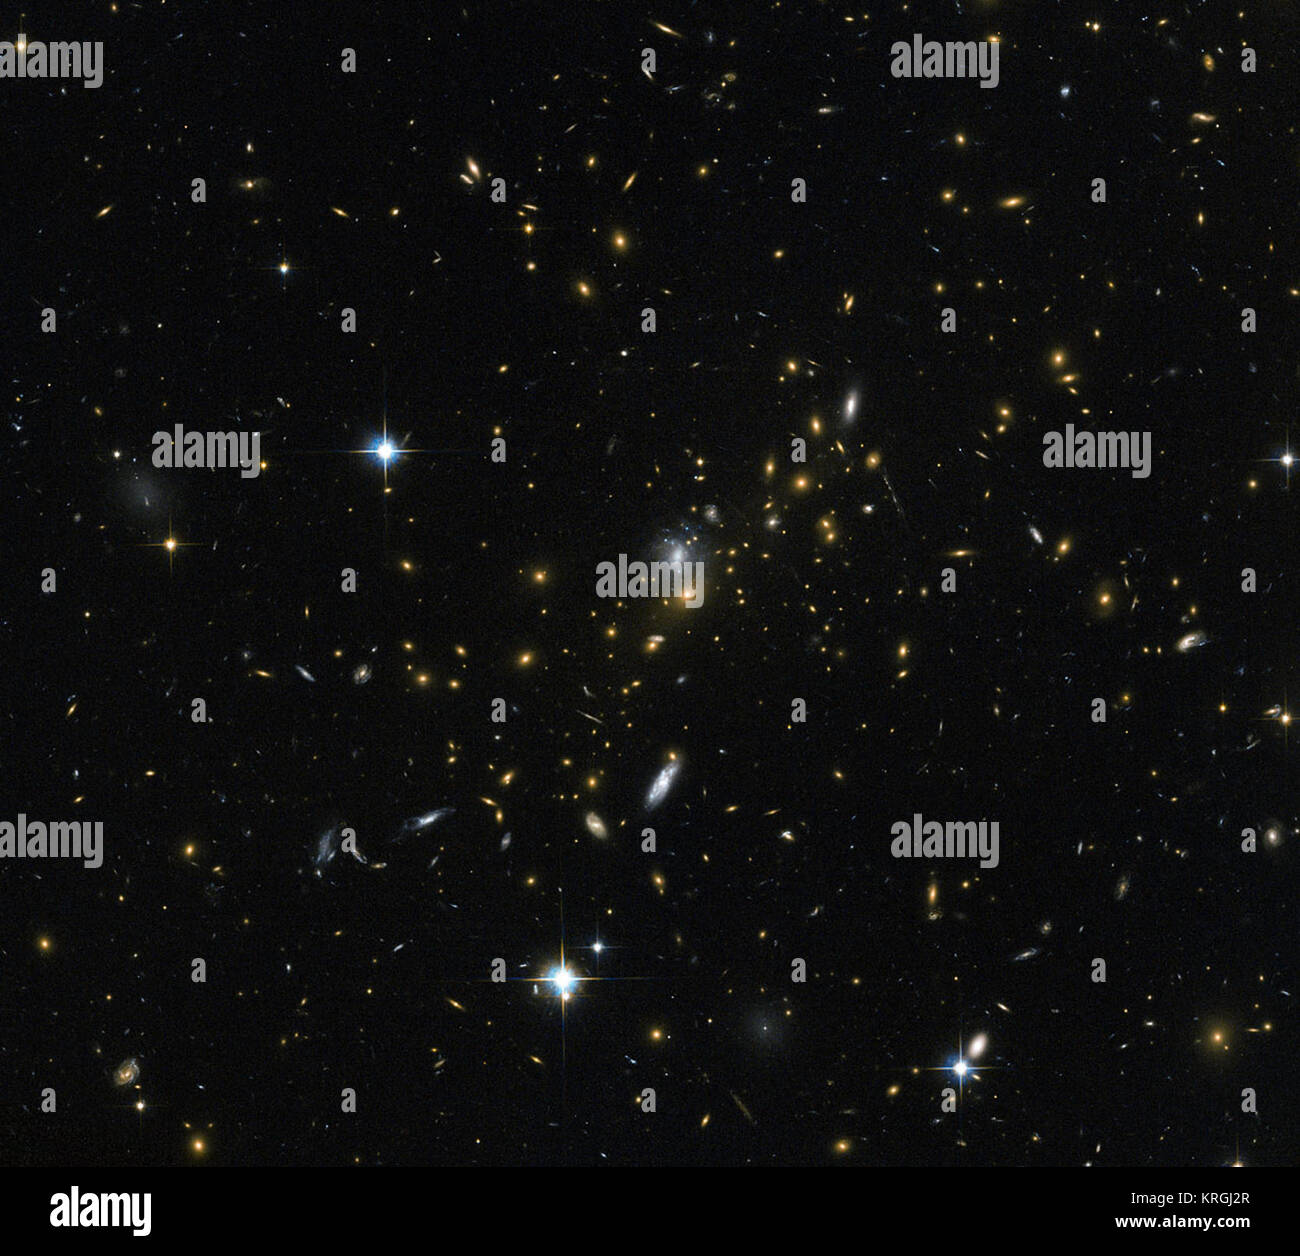 Les amas de galaxies sont parmi les plus massives des structures qui peuvent être trouvés dans l'univers - les grands groupes de galaxies liées par la gravité. Cette image de la NASA/ESA Hubble Space Telescope révèle l'une de ces grappes, connu sous le nom de MACS J0454.1-0300. Chacun des points lumineux que l'on voit ici est une galaxie, et chacun est à la maison à beaucoup de millions, ou même des milliards d'étoiles. Les astronomes ont déterminé la masse des MACS J0454.1-0300 à environ 180 000 milliards de fois la masse du Soleil. Grappes comme ceci sont si massives que leur gravité peuvent même modifier le comportement de l'espace autour d'eux, pliant le chemin d'o Banque D'Images